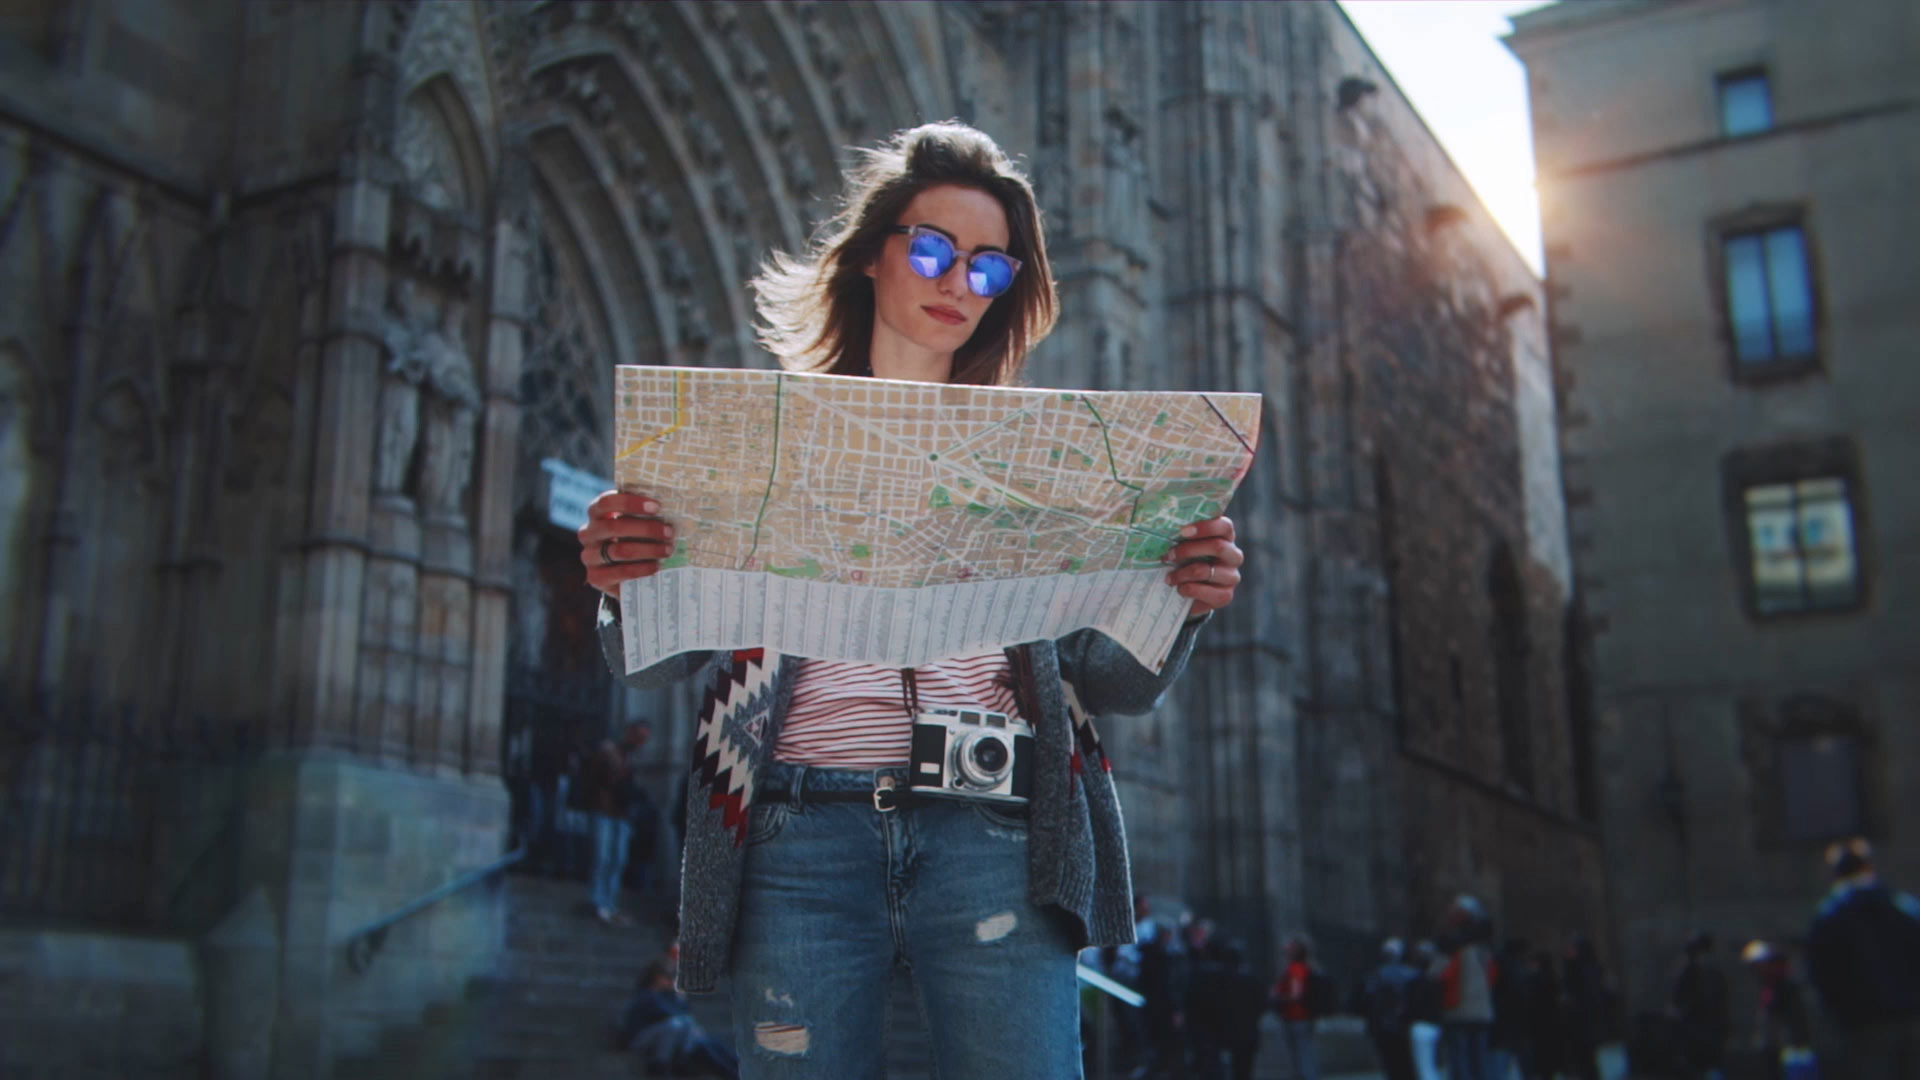 Турист в Барселоне смотрит на карту с Кафедральным собором Барселоны на заднем плане.